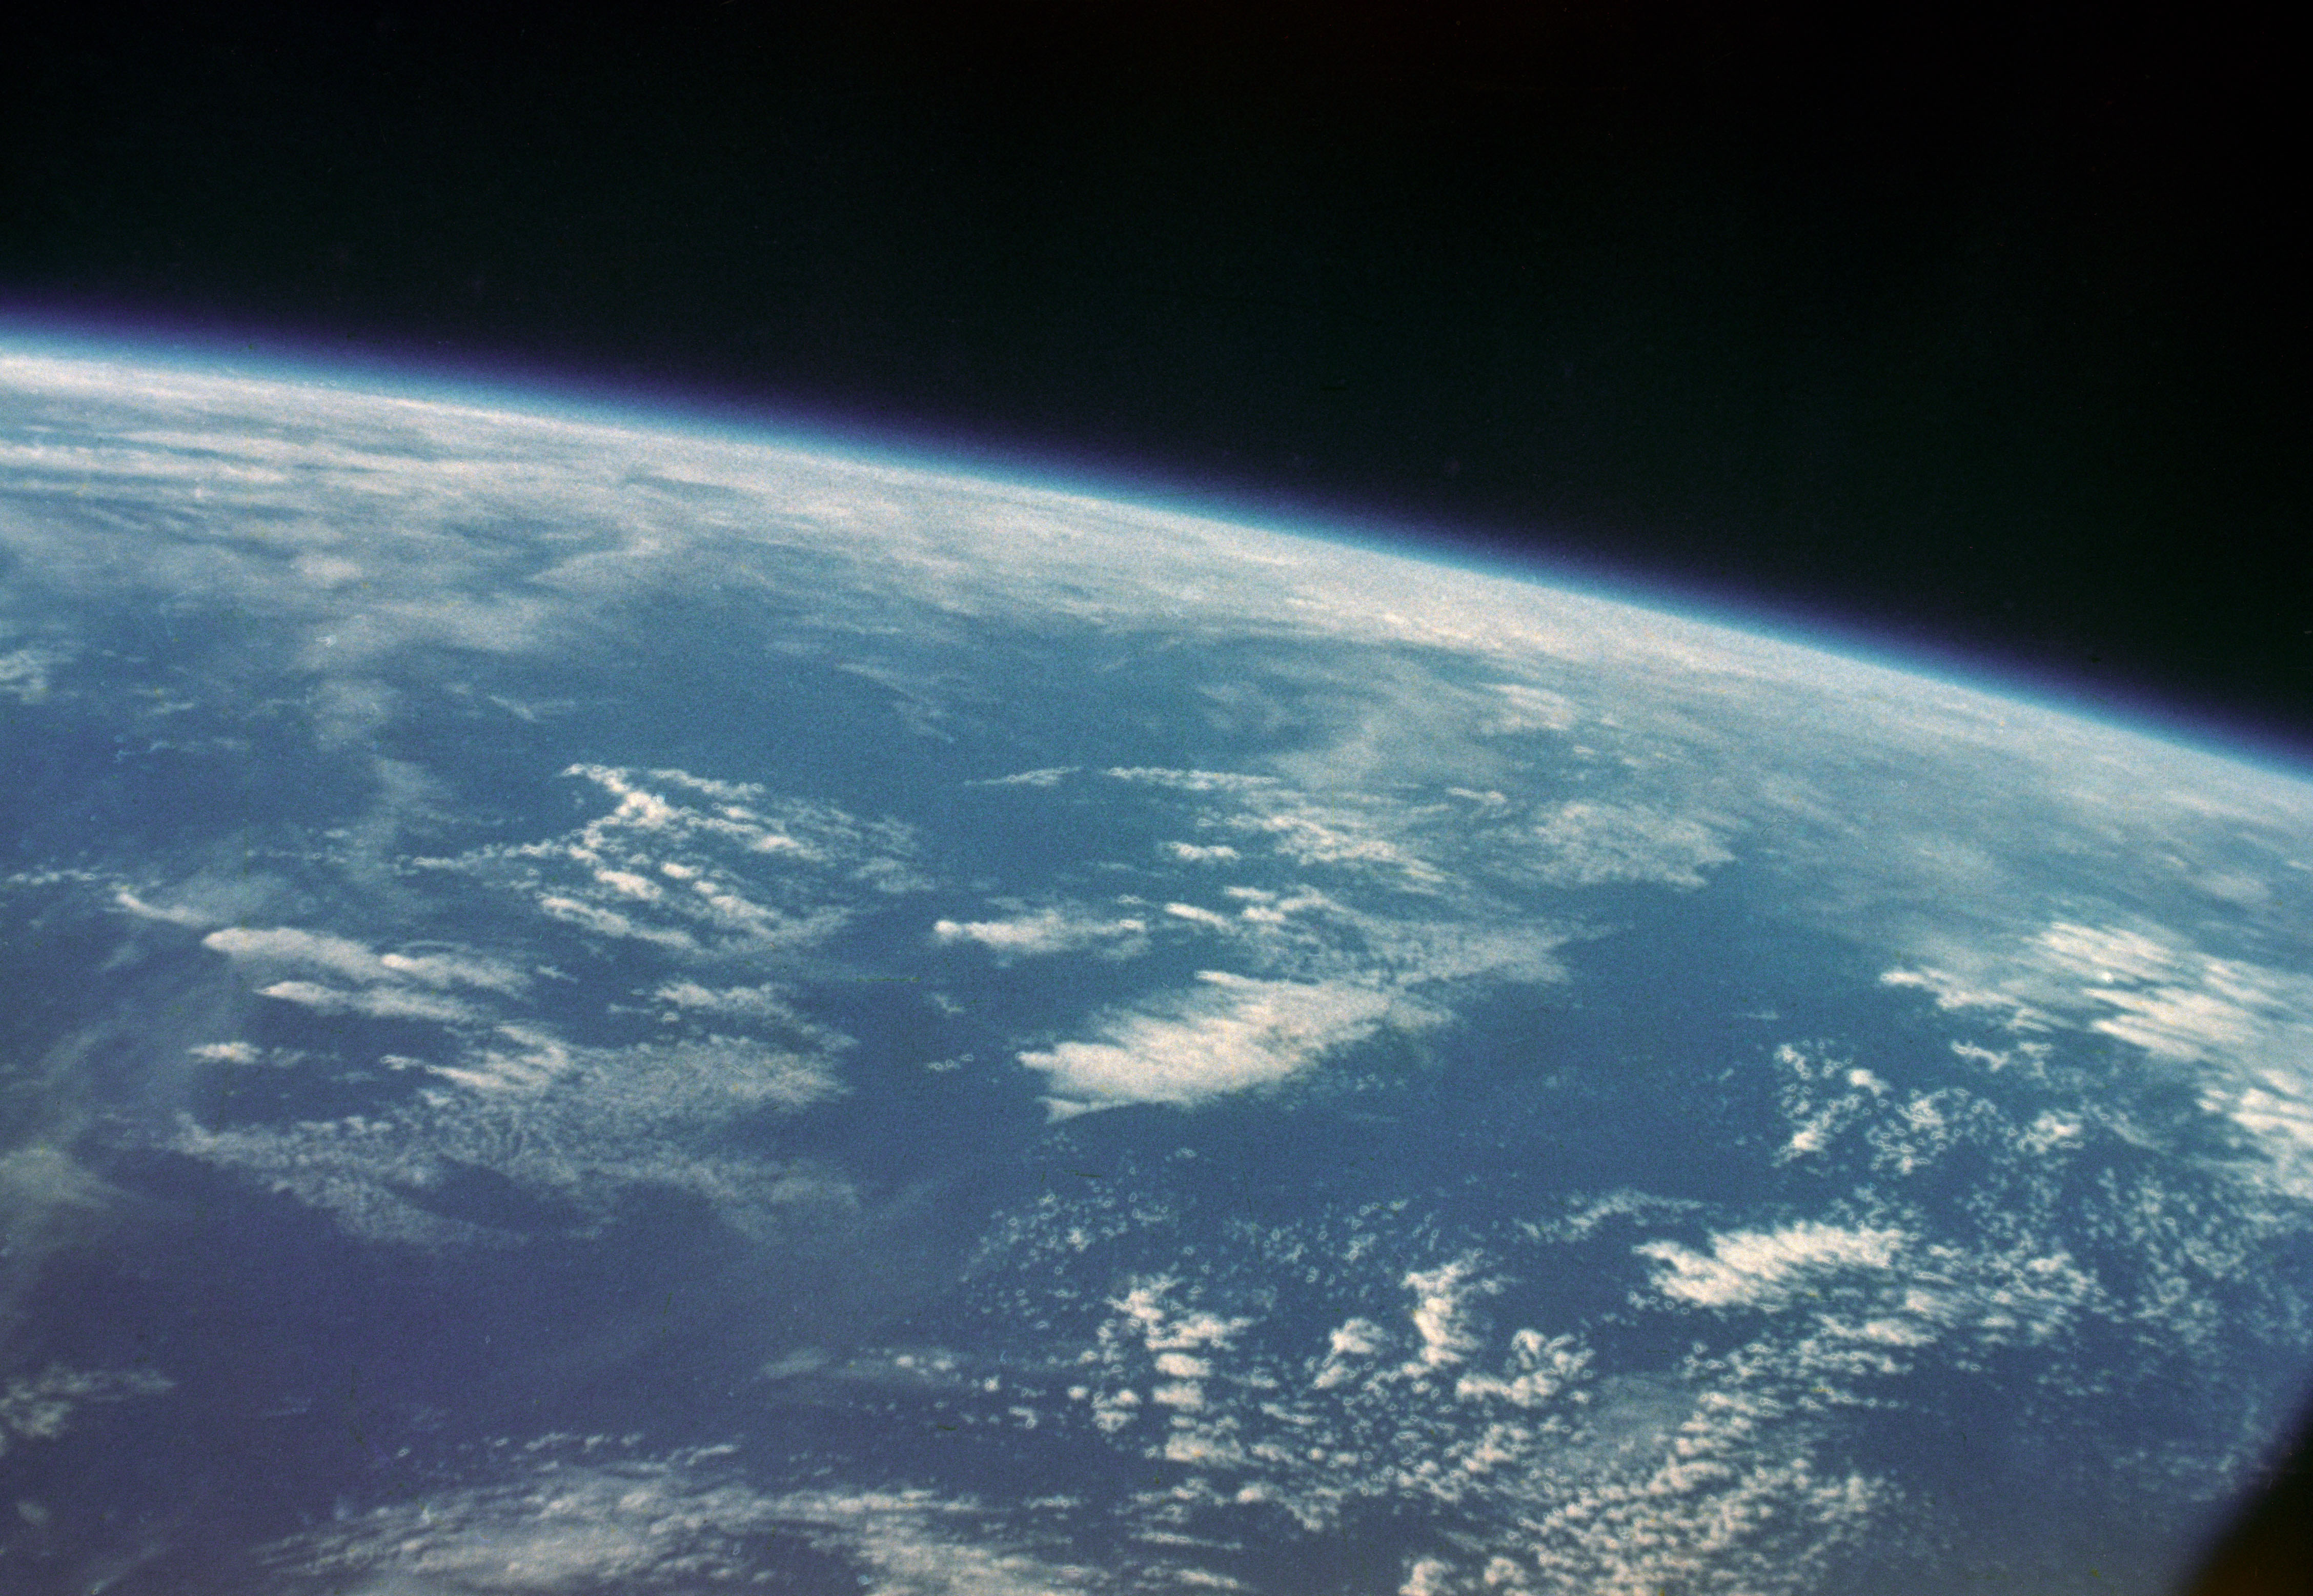 View of Earth taken by astronaut John H. Glenn Jr. from Mercury Atlas 6 